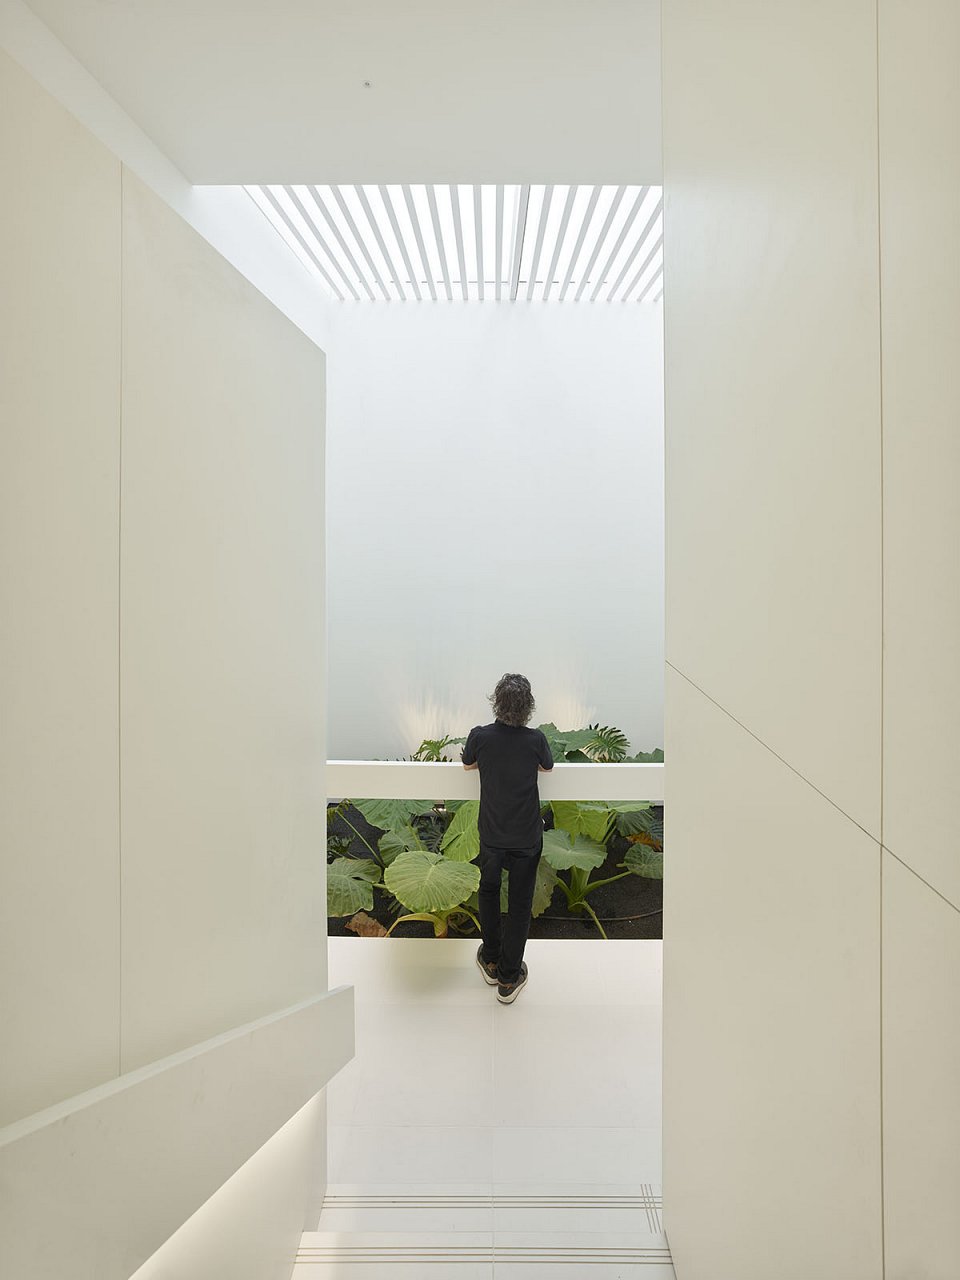 GPY Arquitectos. The New Casa de Los Volcanes Exhibition Space. Gallery - patio. Photograph: Roland Halbe